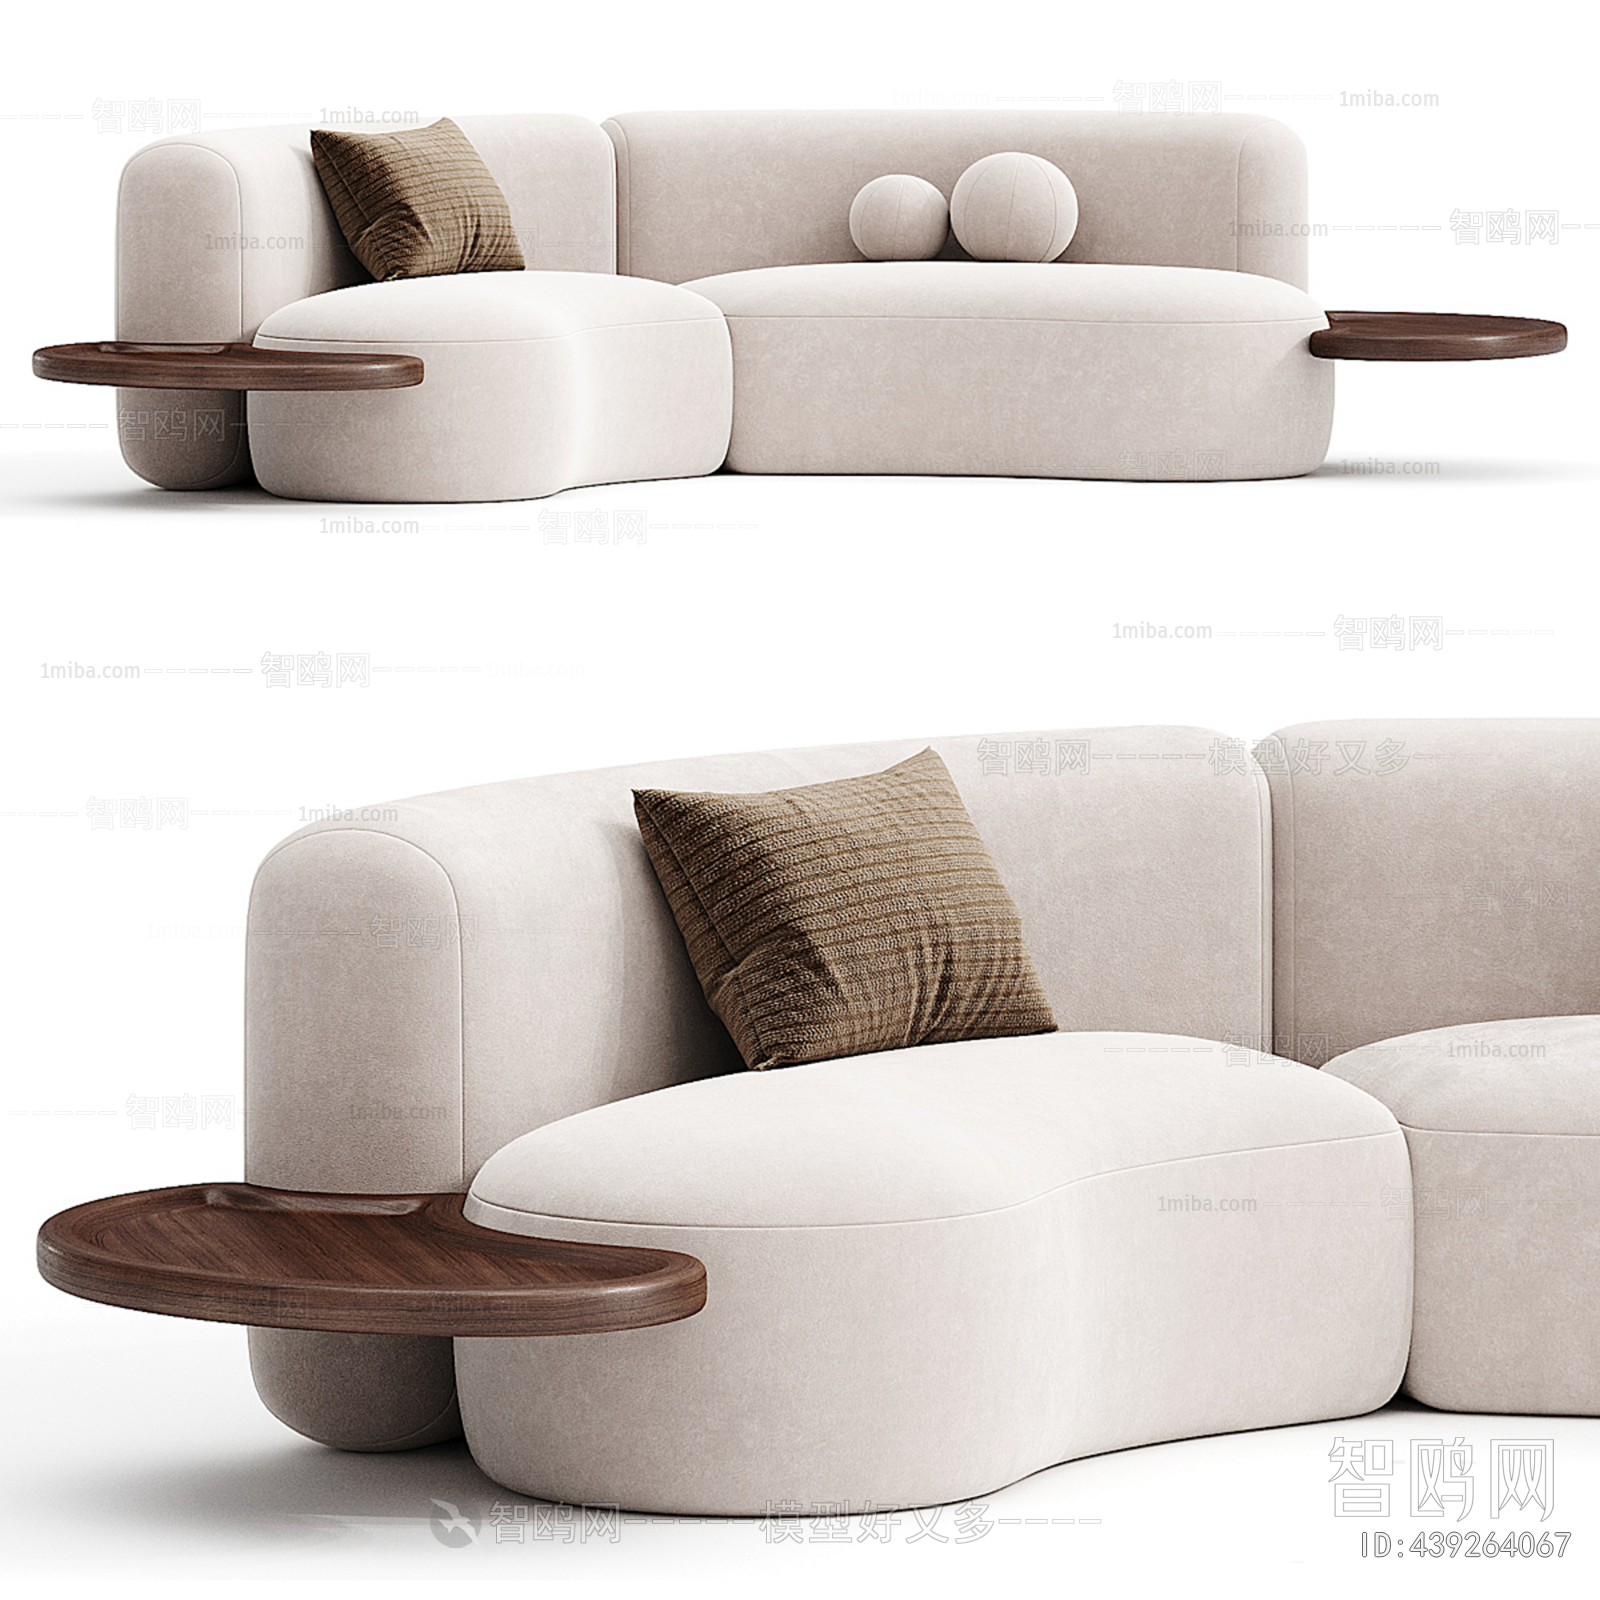 Wabi-sabi Style Multi Person Sofa